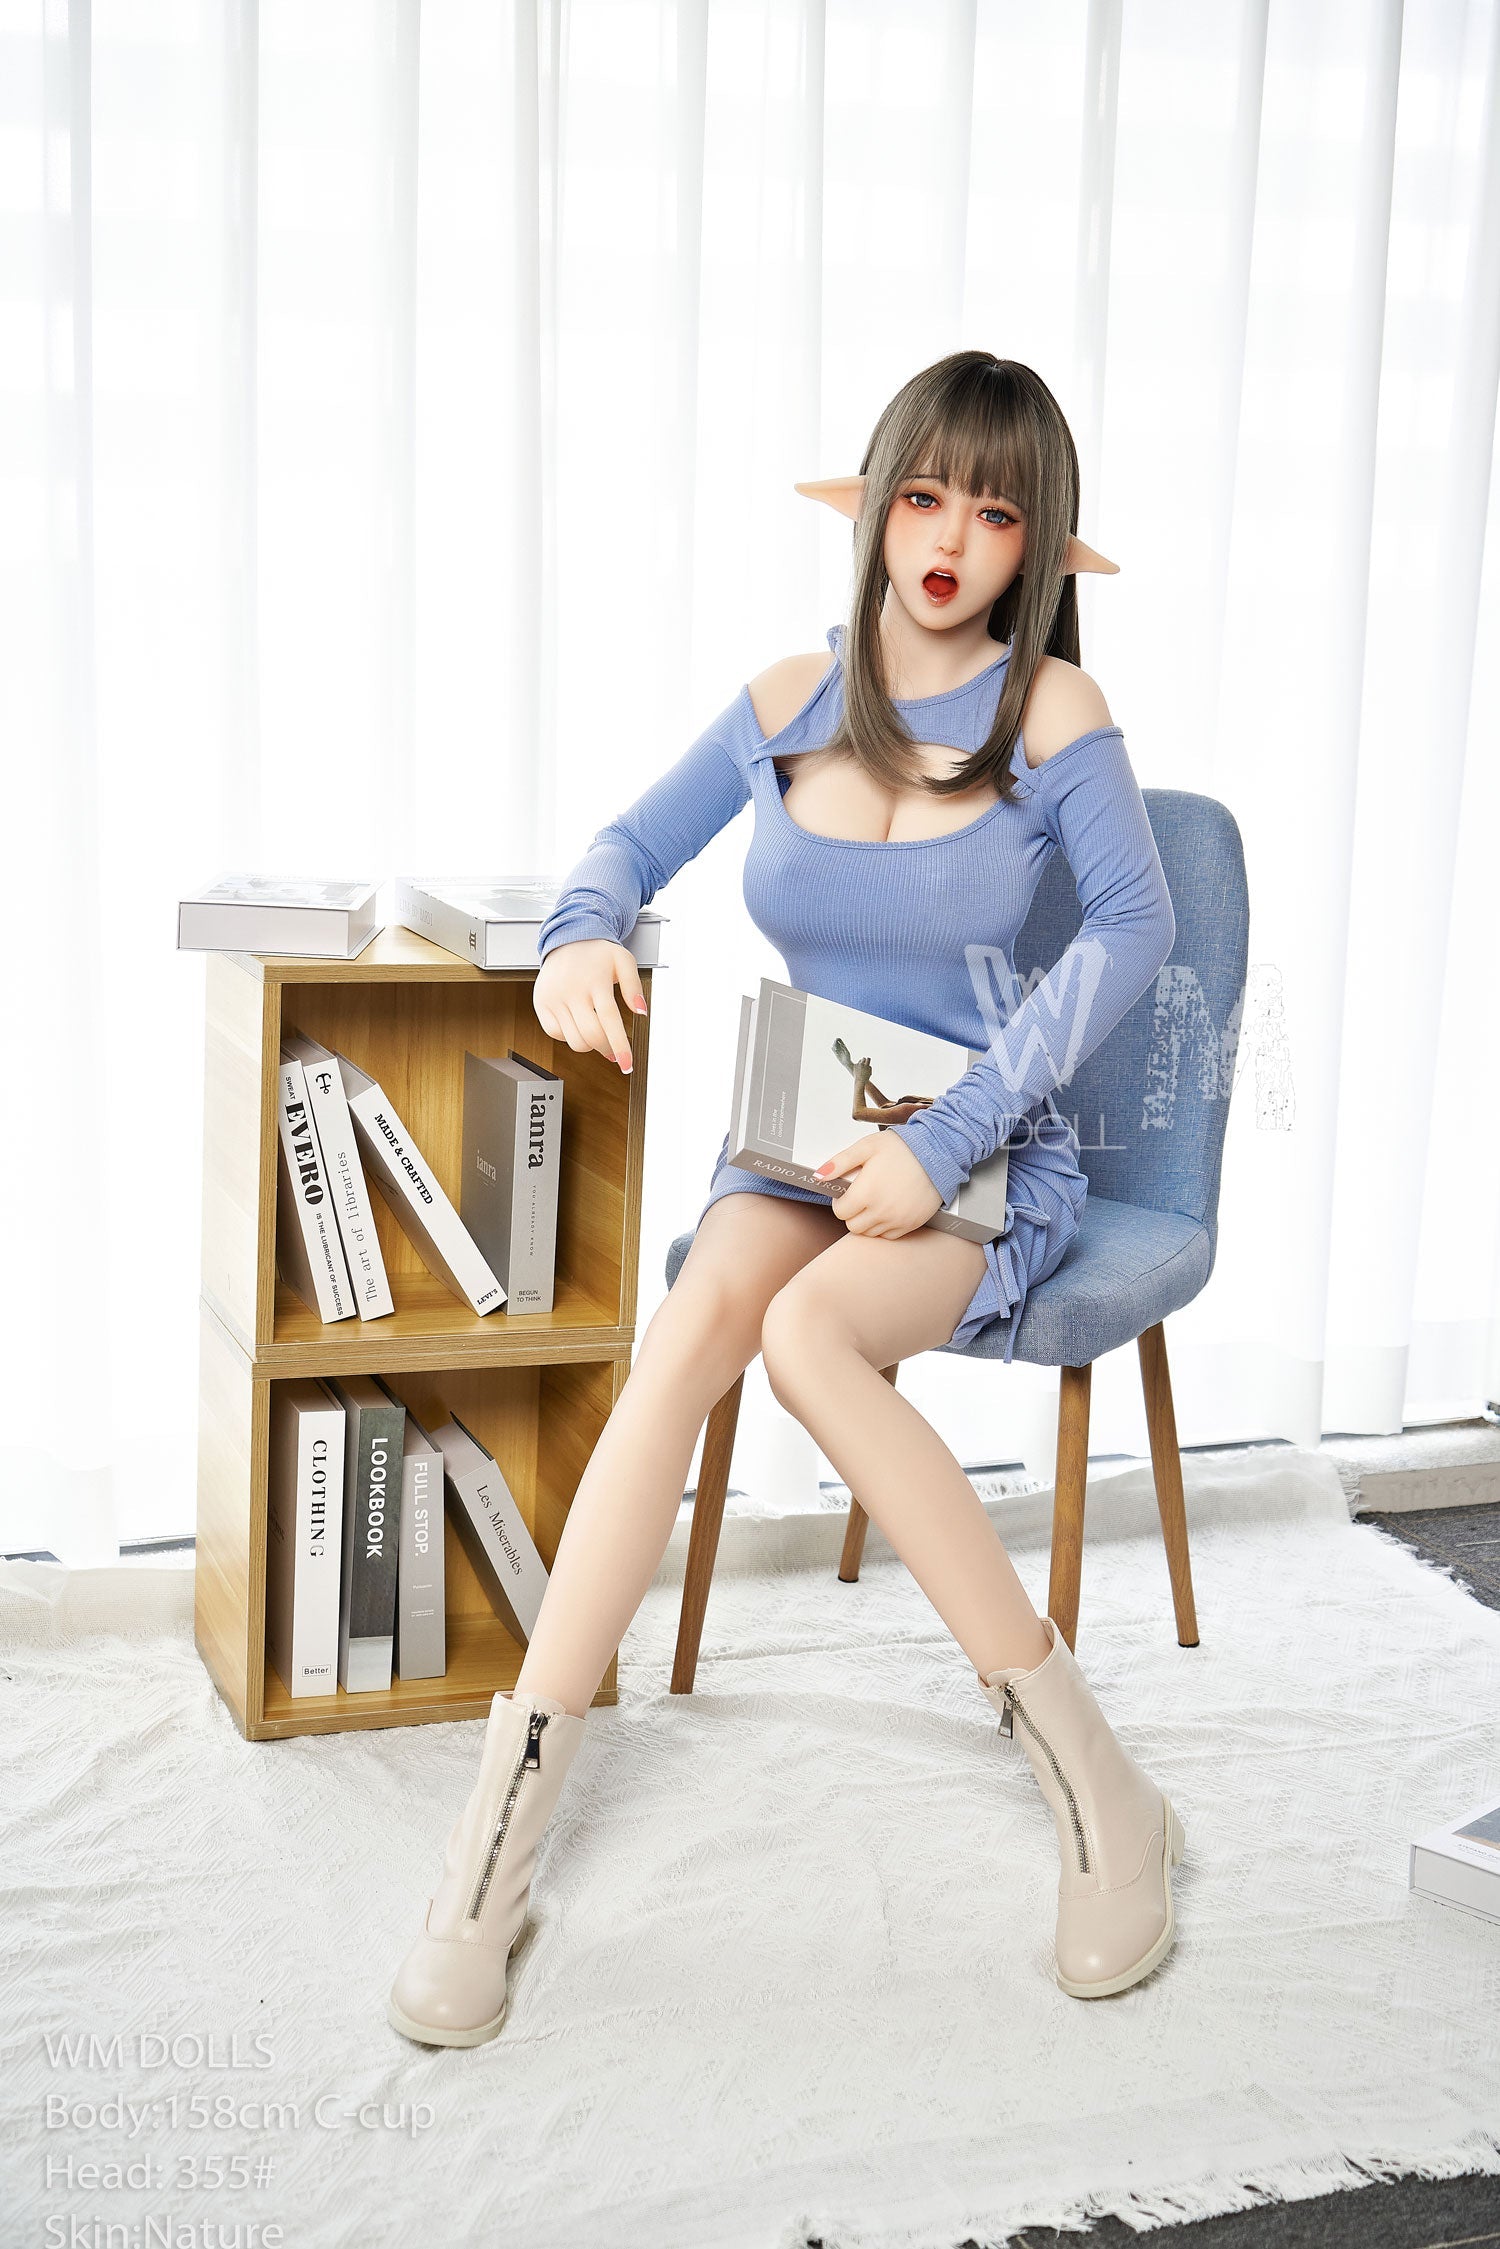 WM Doll 158 cm C TPE - Josie | Sex Dolls SG